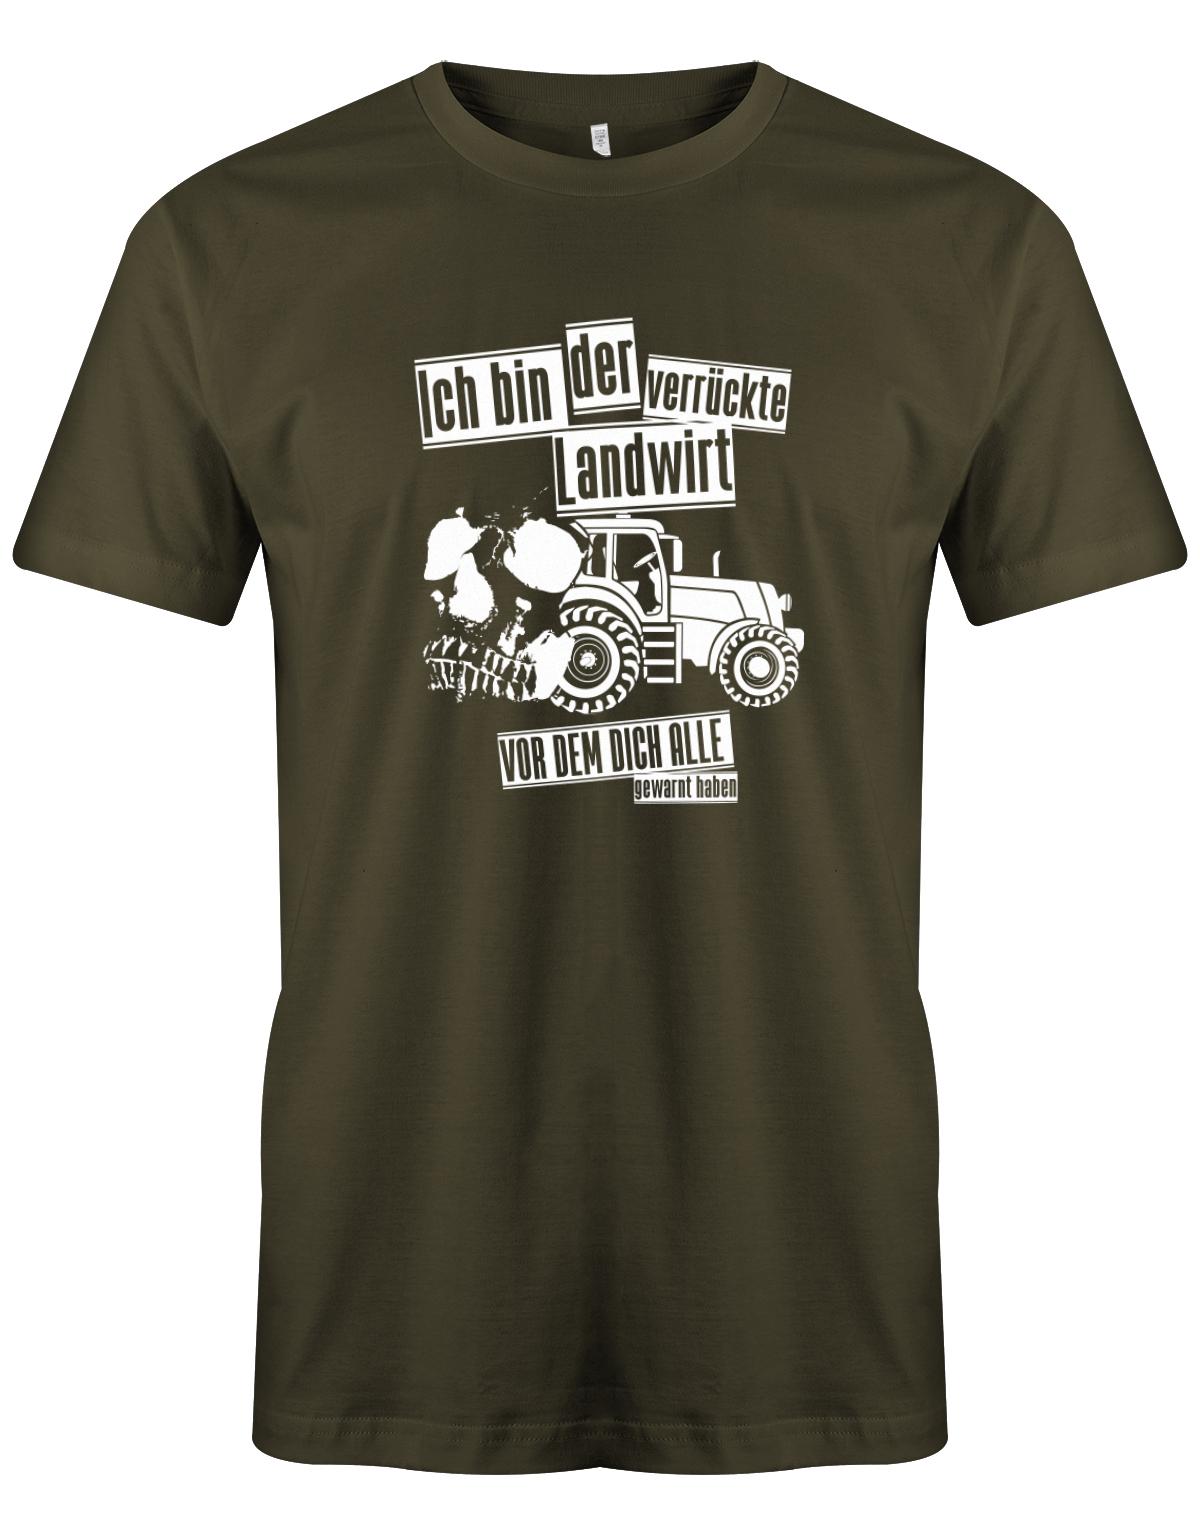 Landwirtschaft Shirt Männer - Ich bin der verrückte Landwirt vor dem dich alle gewarnt haben. Army